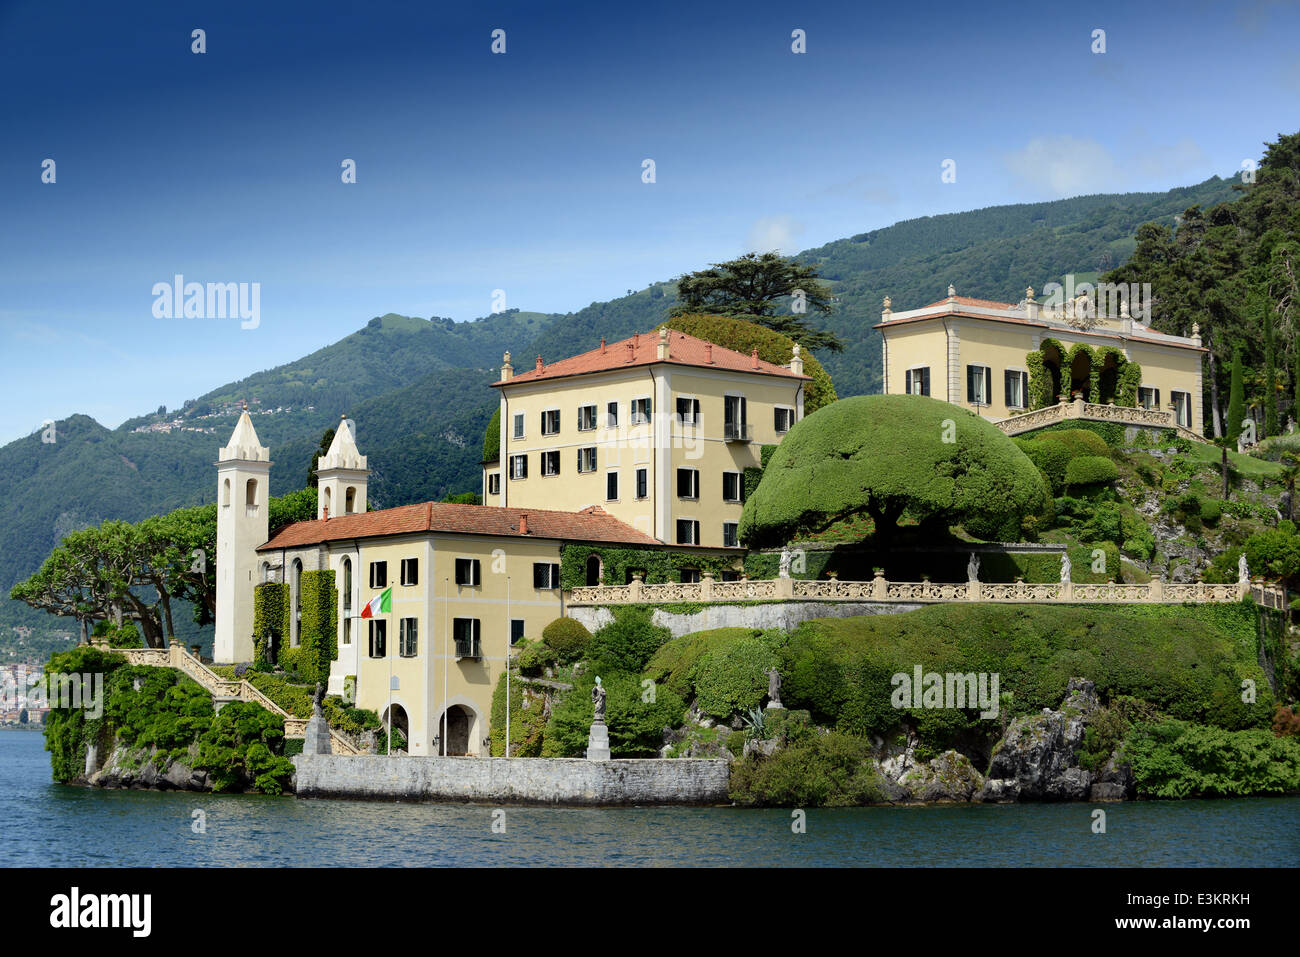 Villa Balbianello, Lenno, Lake Como, Italy Stock Photo